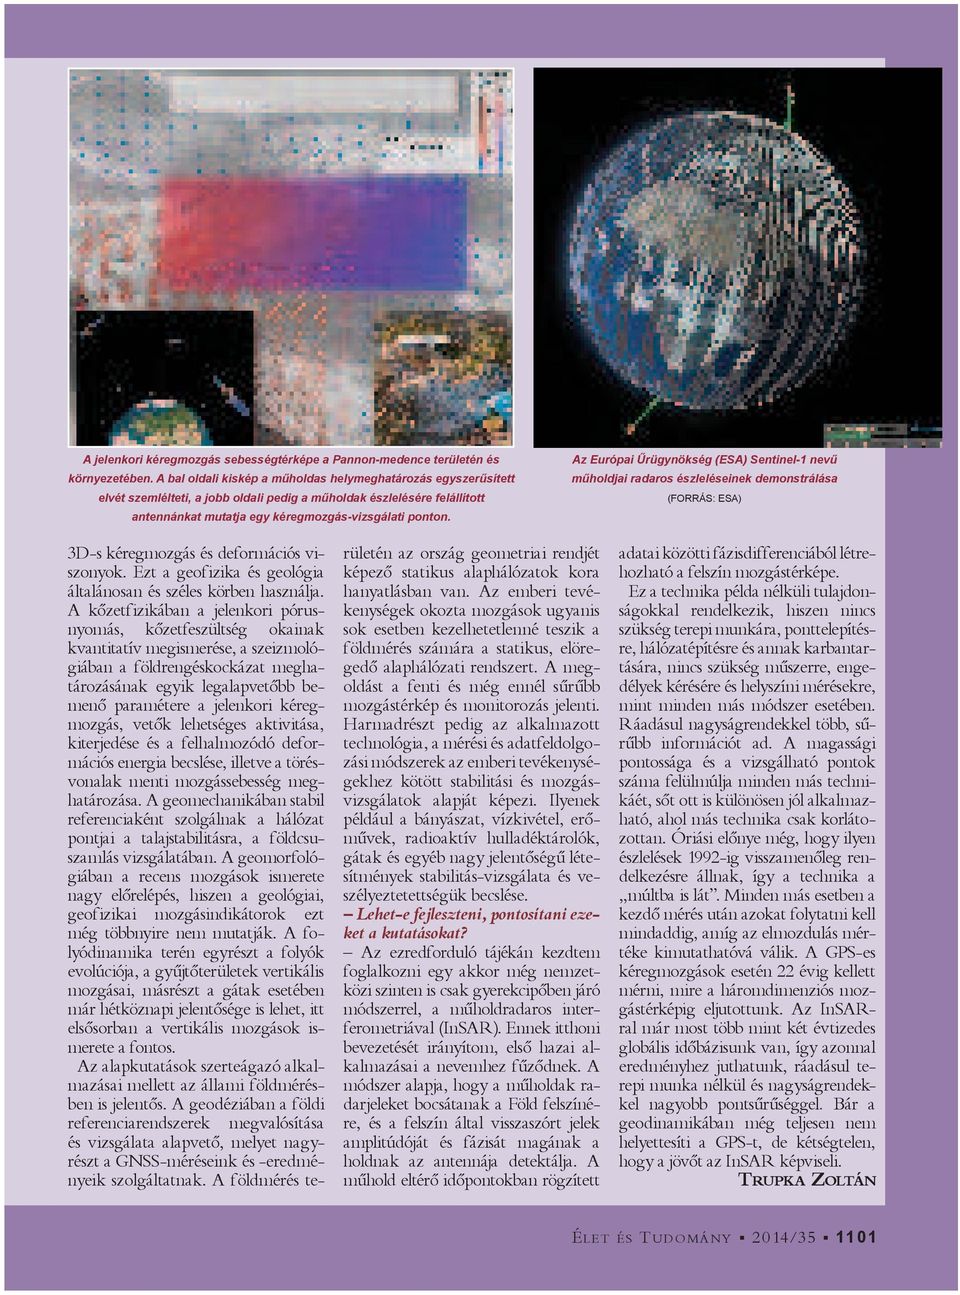 Az Európai rügynökség (ESA) Sentinel-1 nev m holdjai radaros észleléseinek demonstrálása (FORRÁS: ESA) 3D-s kéregmozgás és deformációs viszonyok.